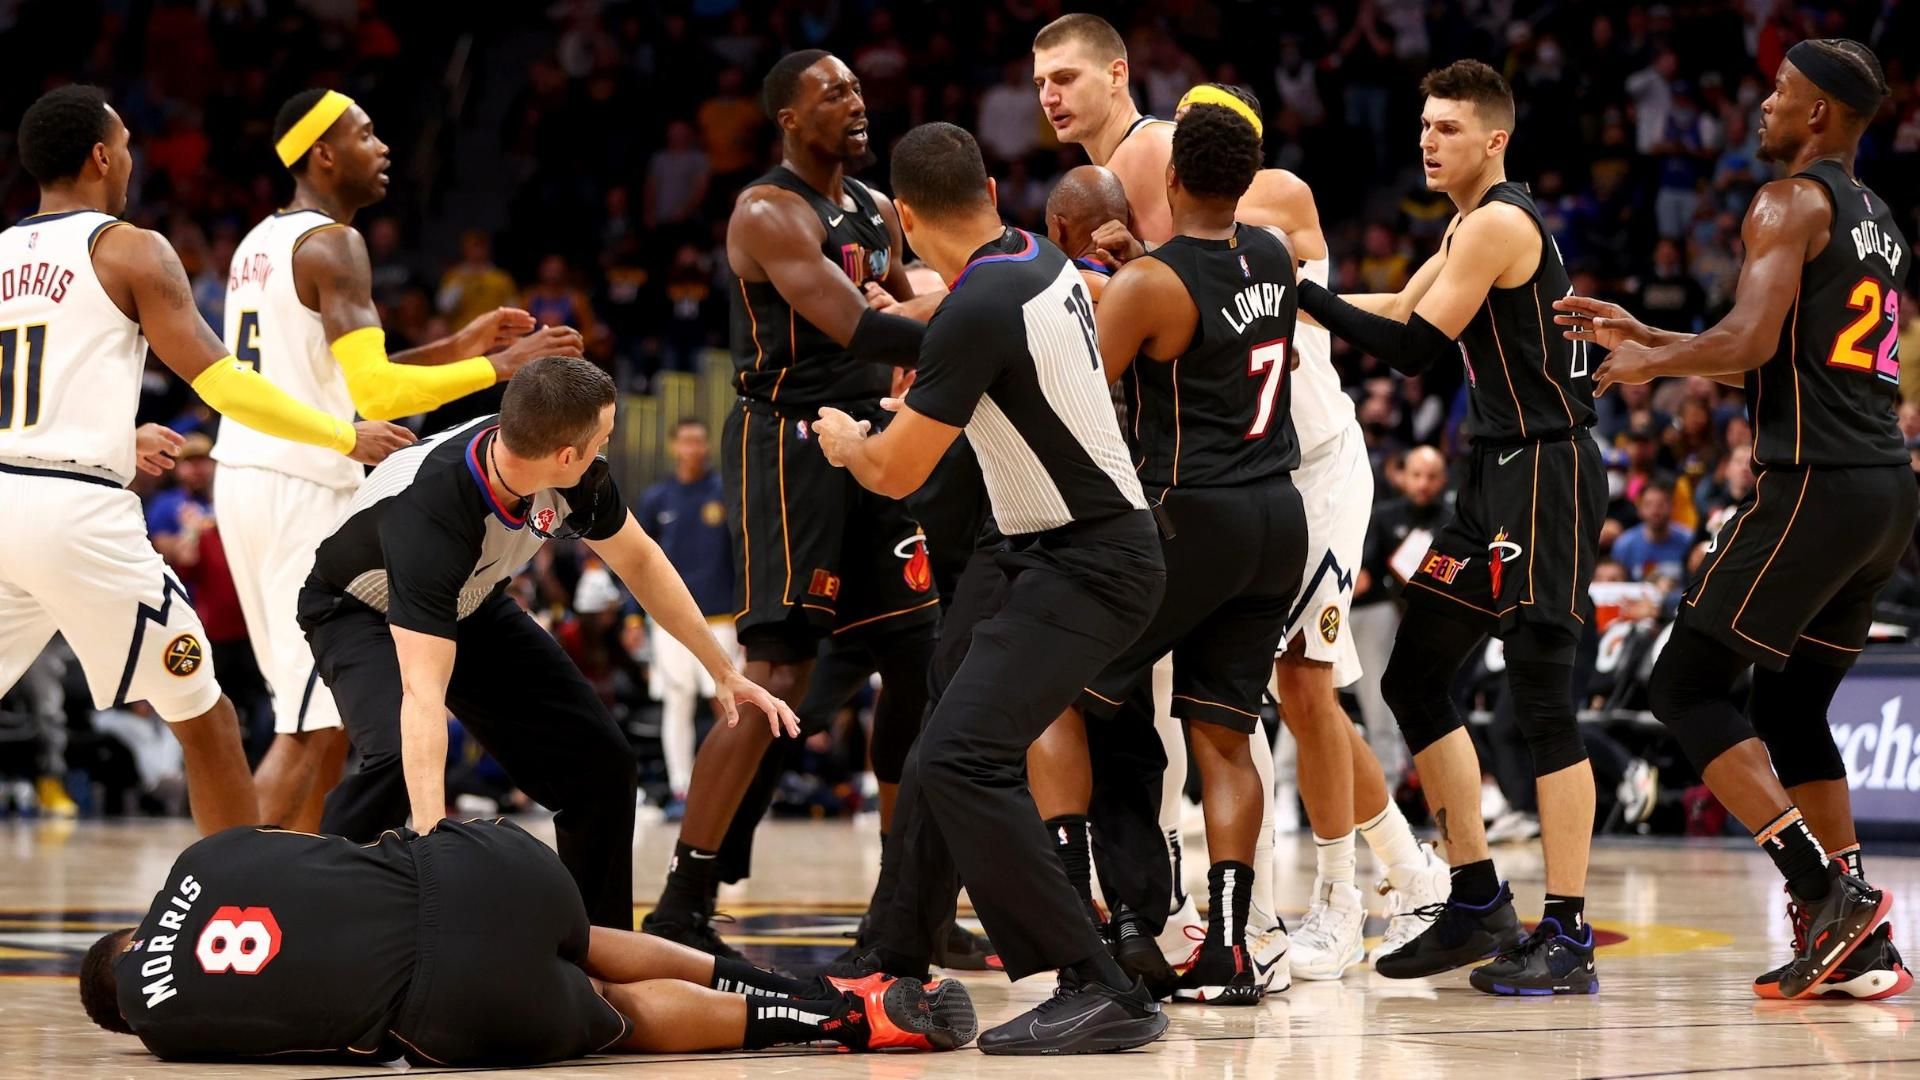 Баскетболисты НБА устроили драку на площадке, одного из них вынесли на носилках: видео